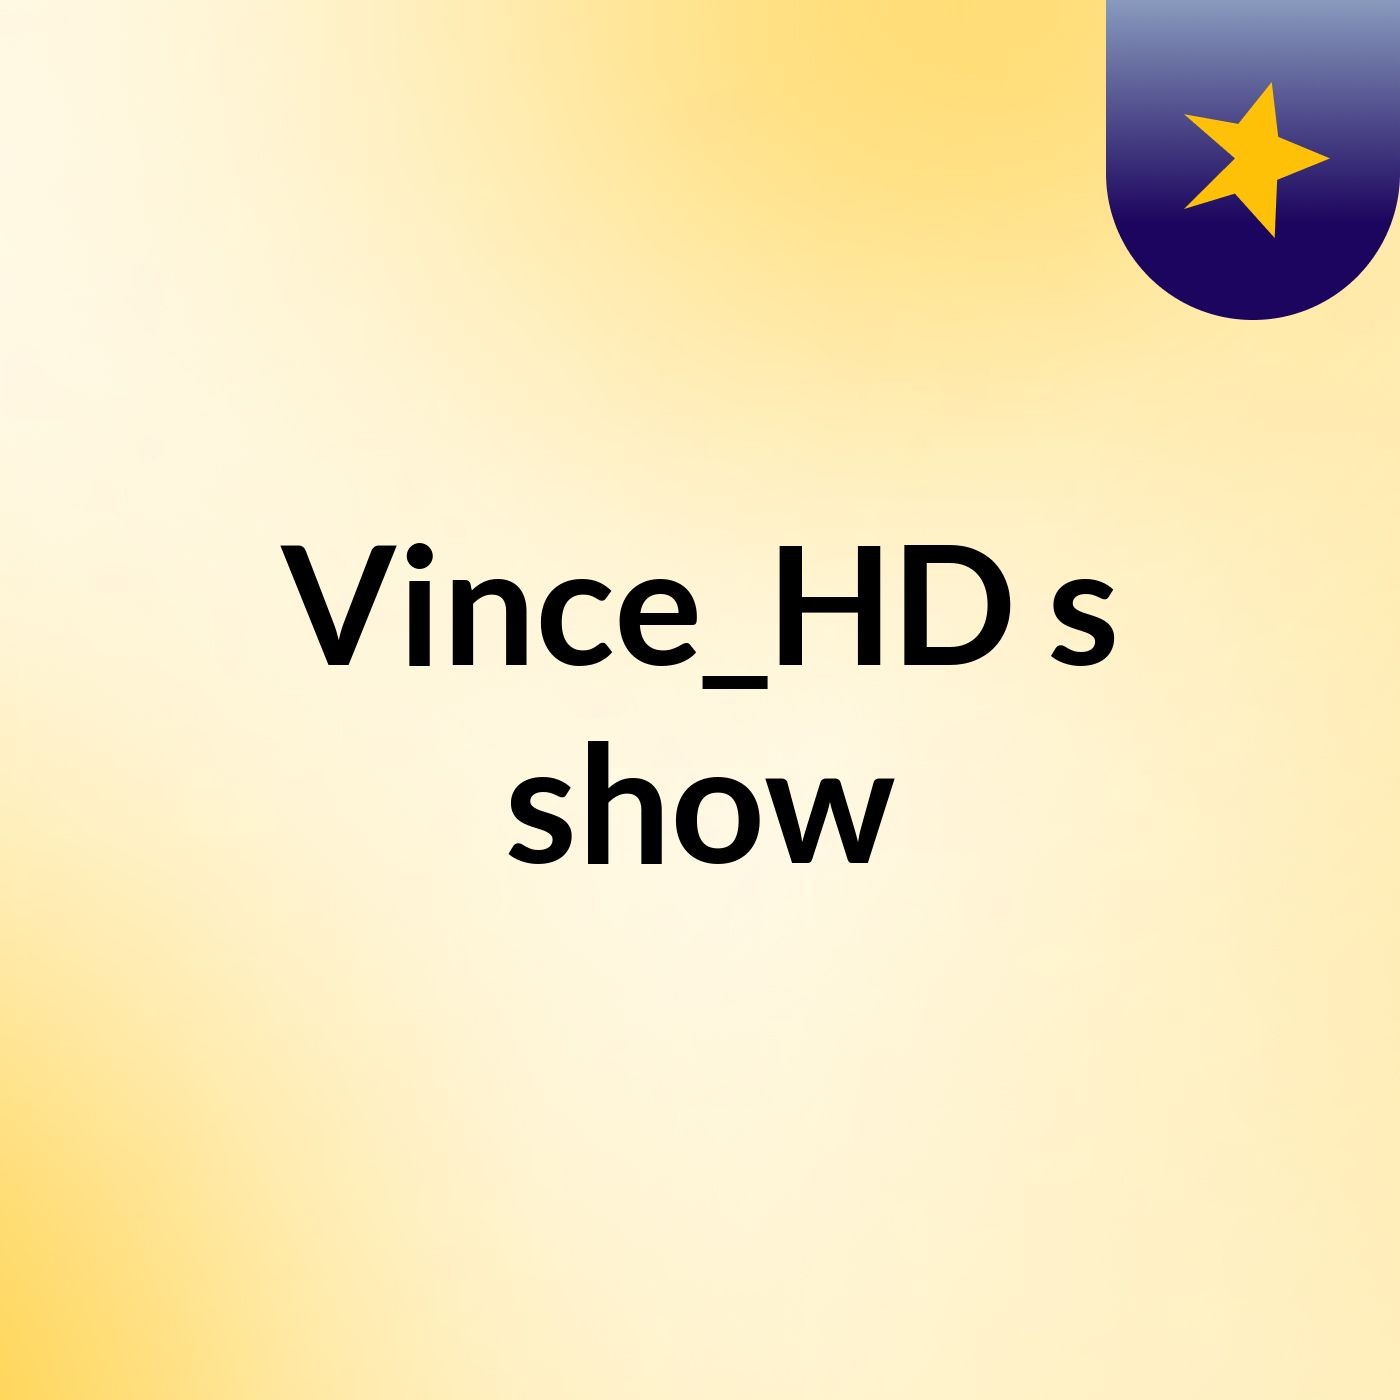 Vince_HD's show